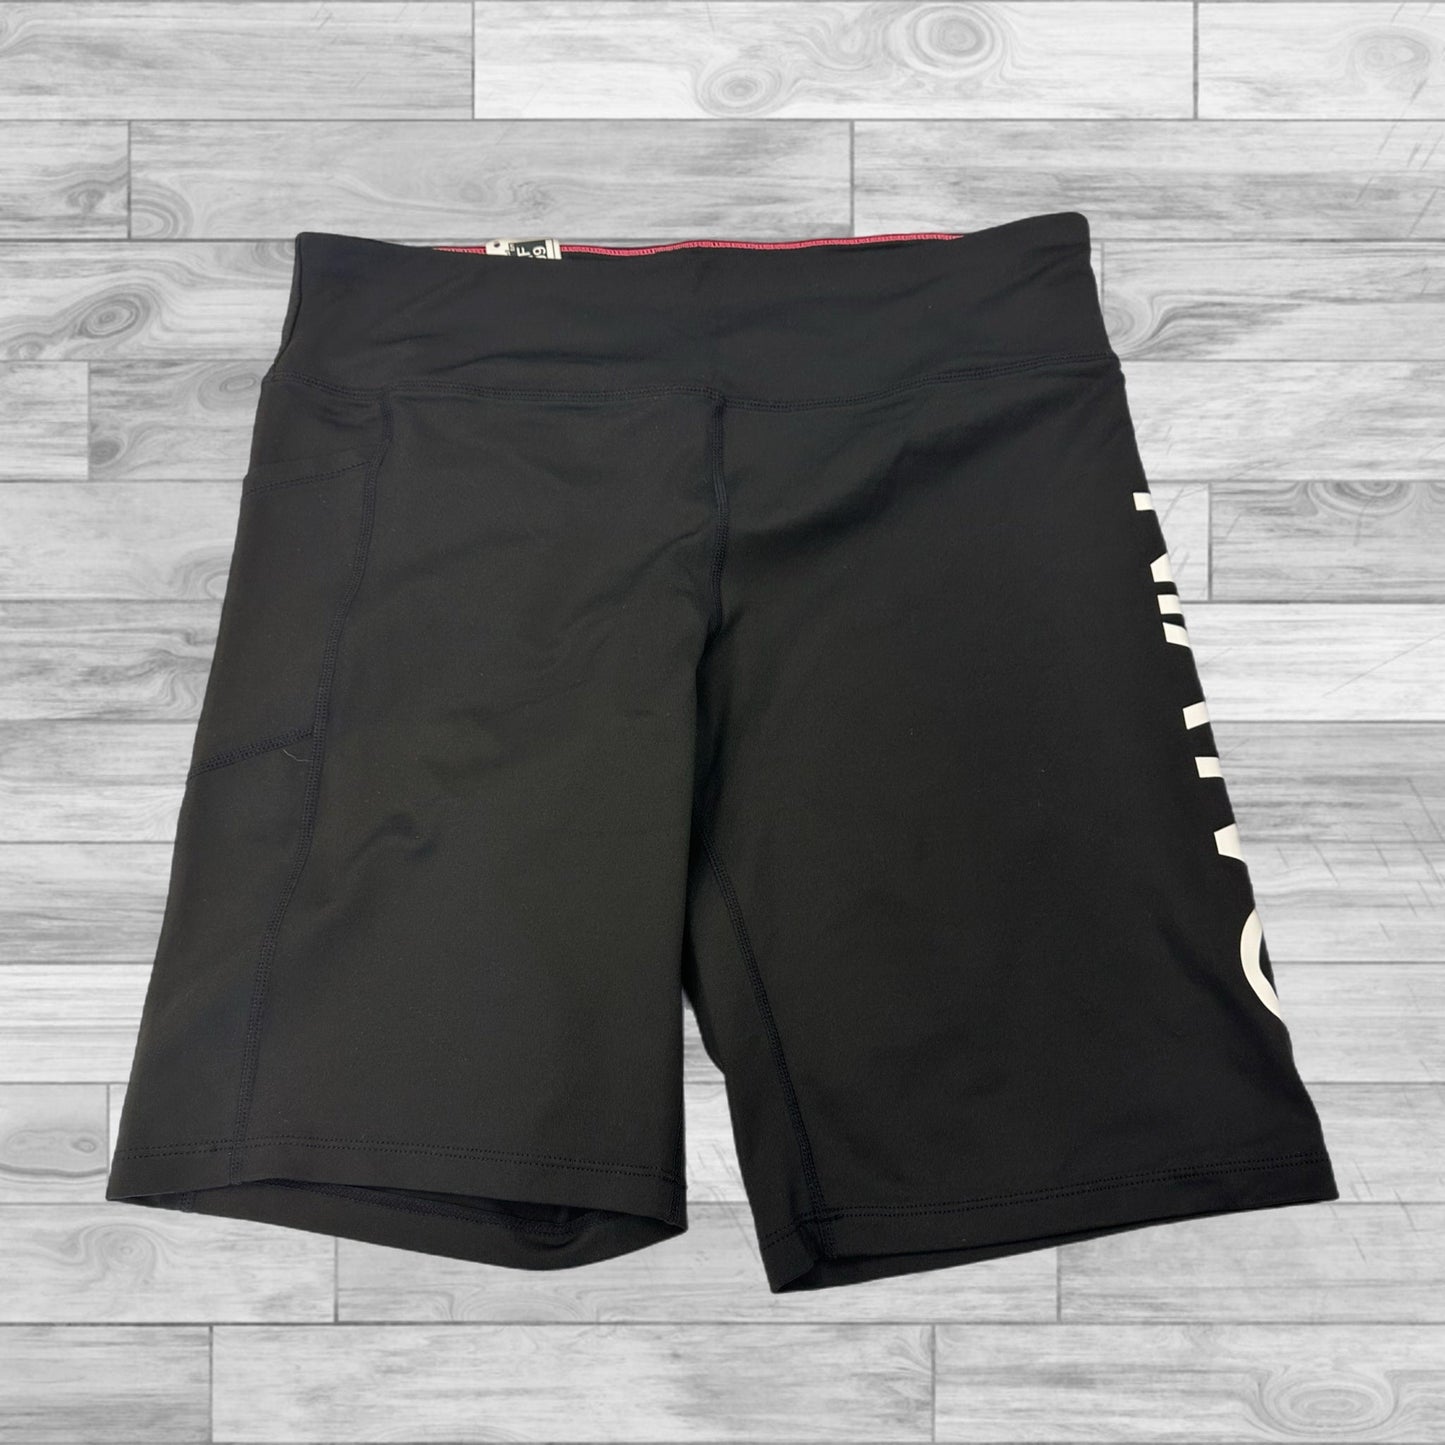 Black & White Athletic Shorts Calvin Klein, Size Xl